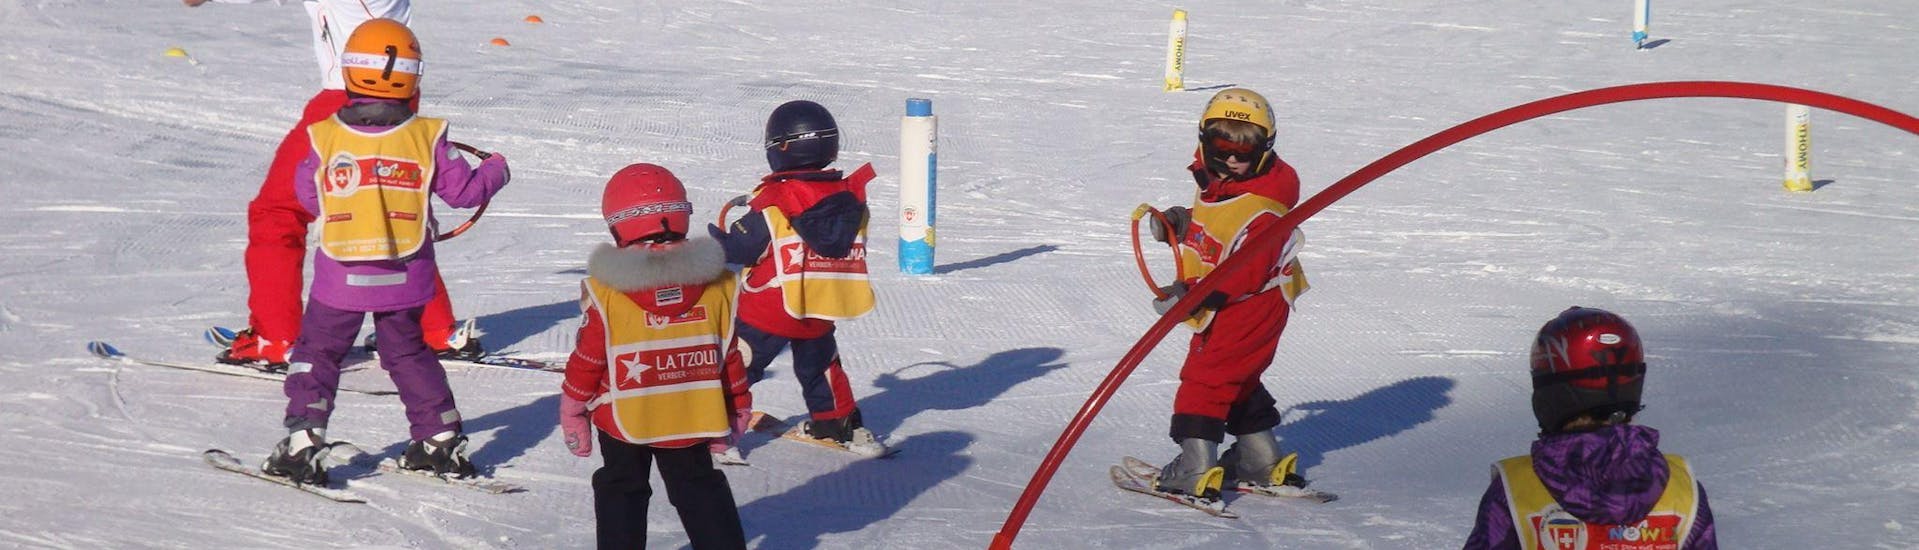 Alcuni bambini imparano le basi dello sci giocando e in totale sicurezza nello snowgarden, durante le loro lezioni "Snowgarden" (3-6 anni) - Mattina con la Scuola di Sci Svizzera La Tzoumaz.